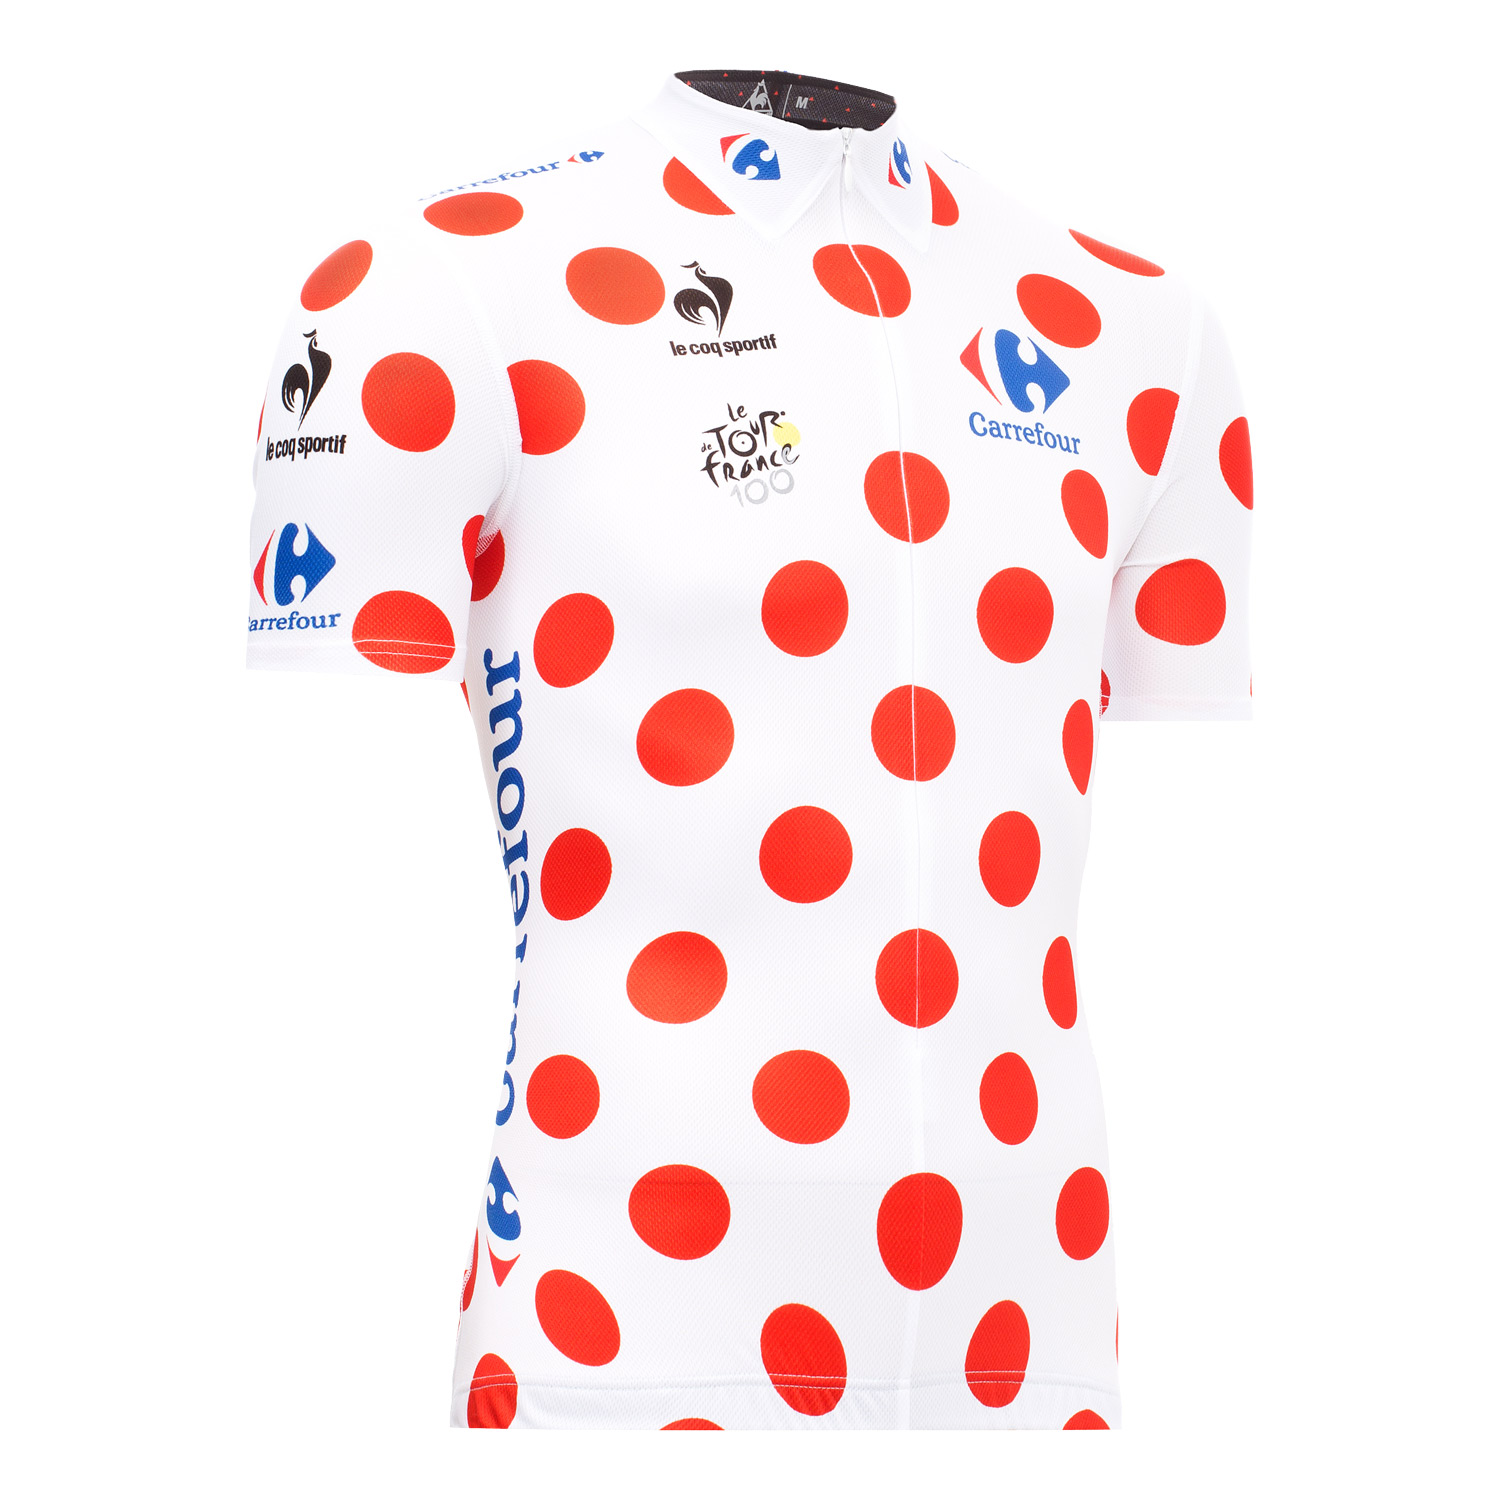 2013环法自行车赛冠军荣誉衫骑行服限量发售